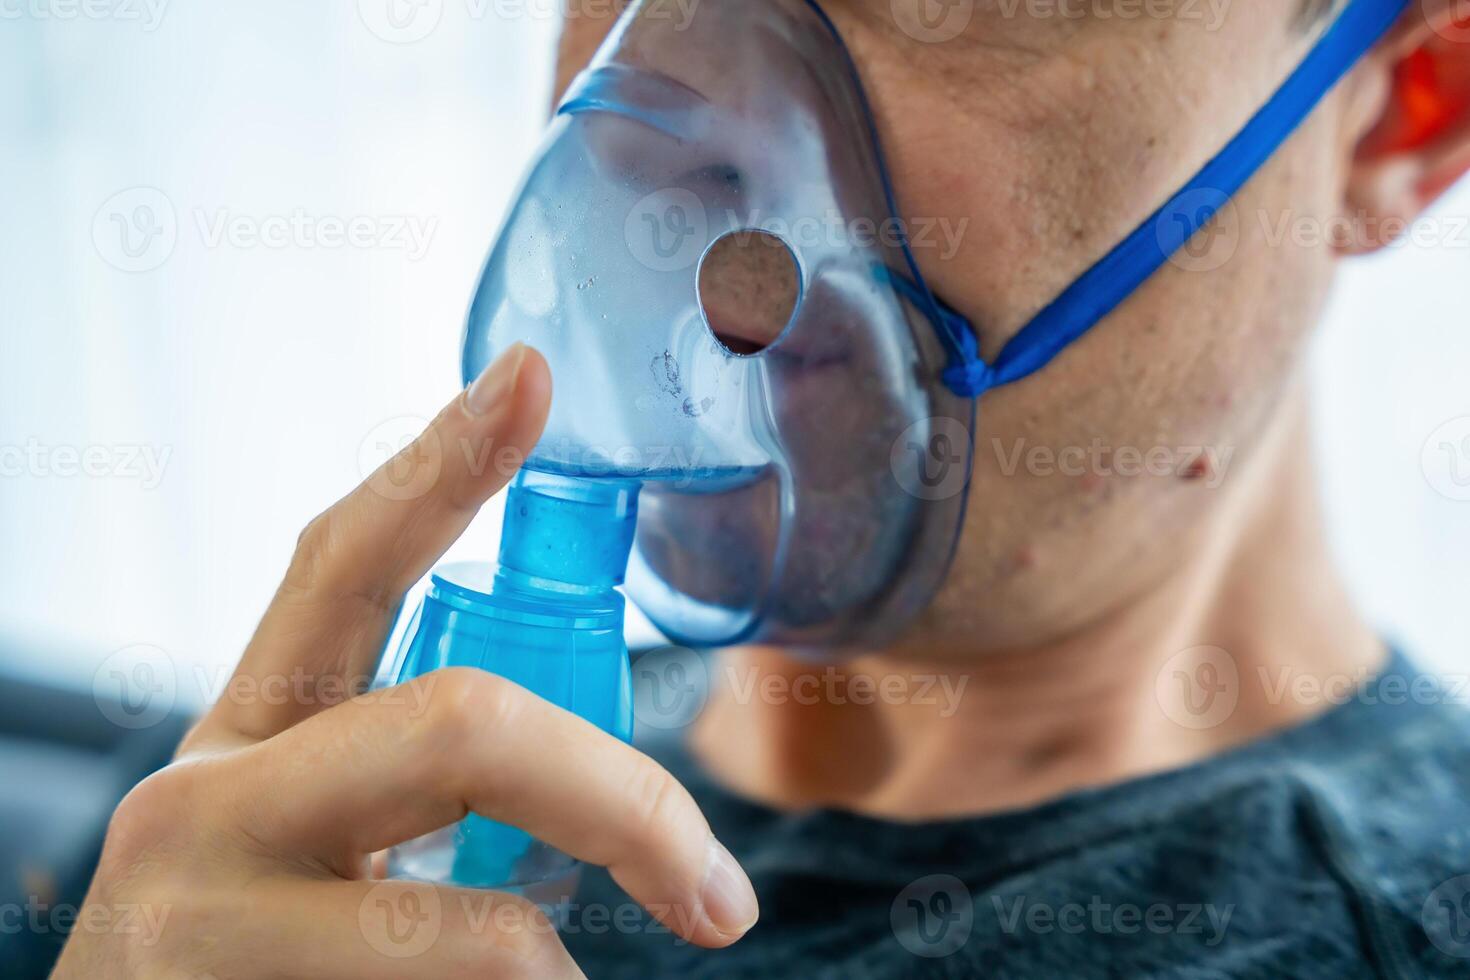 vicino su Visualizza di malsano uomo indossare nebulizzatore maschera nel casa. Salute, medico attrezzatura e persone concetto. alto qualità foto